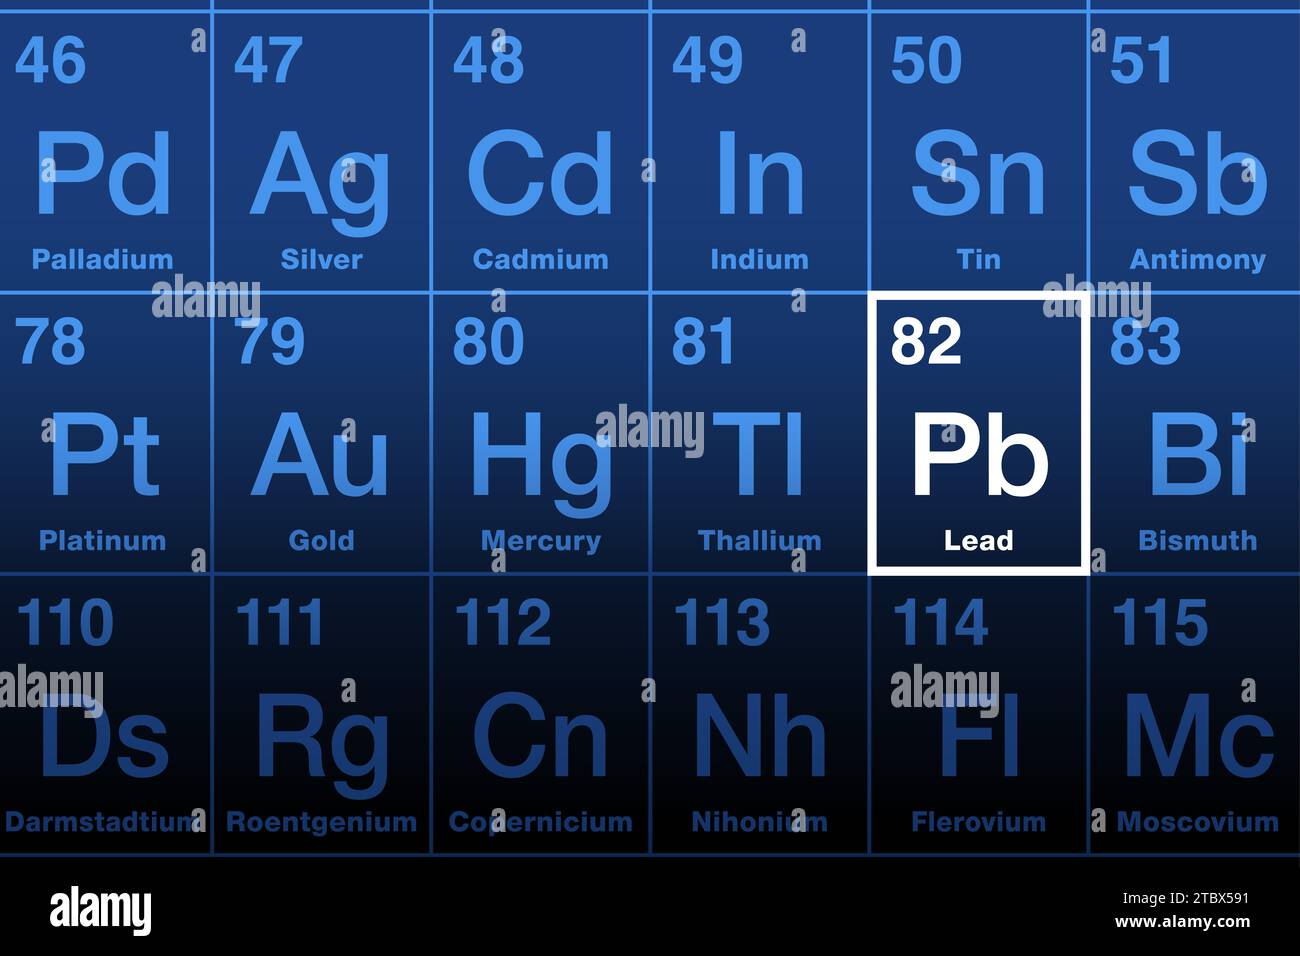 Piombo sulla tavola periodica degli elementi. Elemento chimico con il simbolo Pb per il latino plumbum e numero atomico 82. Metallo pesante morbido e malleabile. Foto Stock